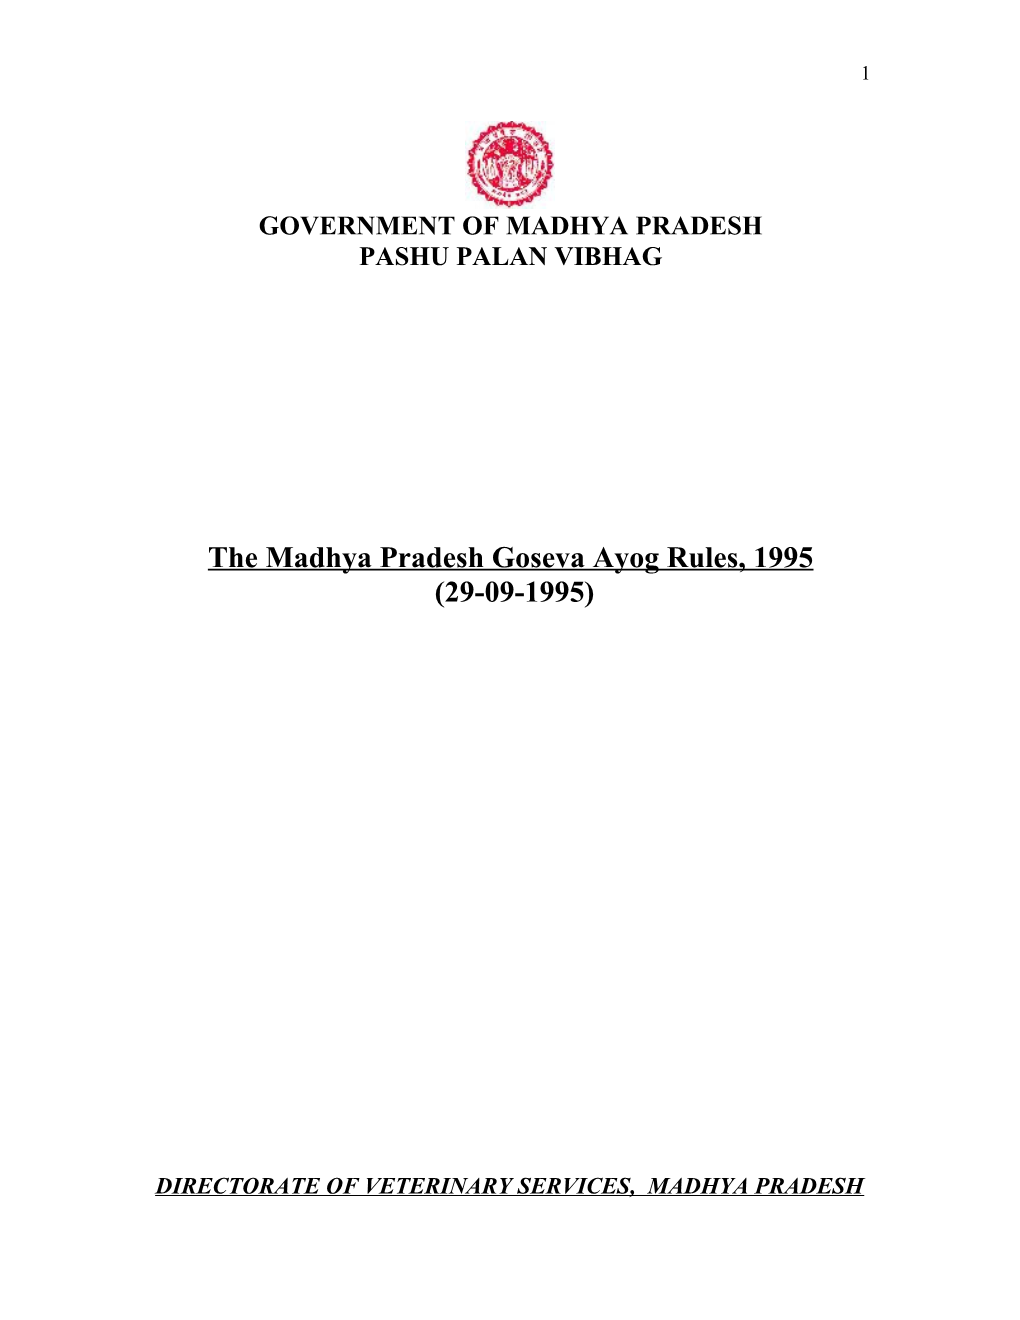 The Madhya Pradesh Goseva Ayog Rules, 1995